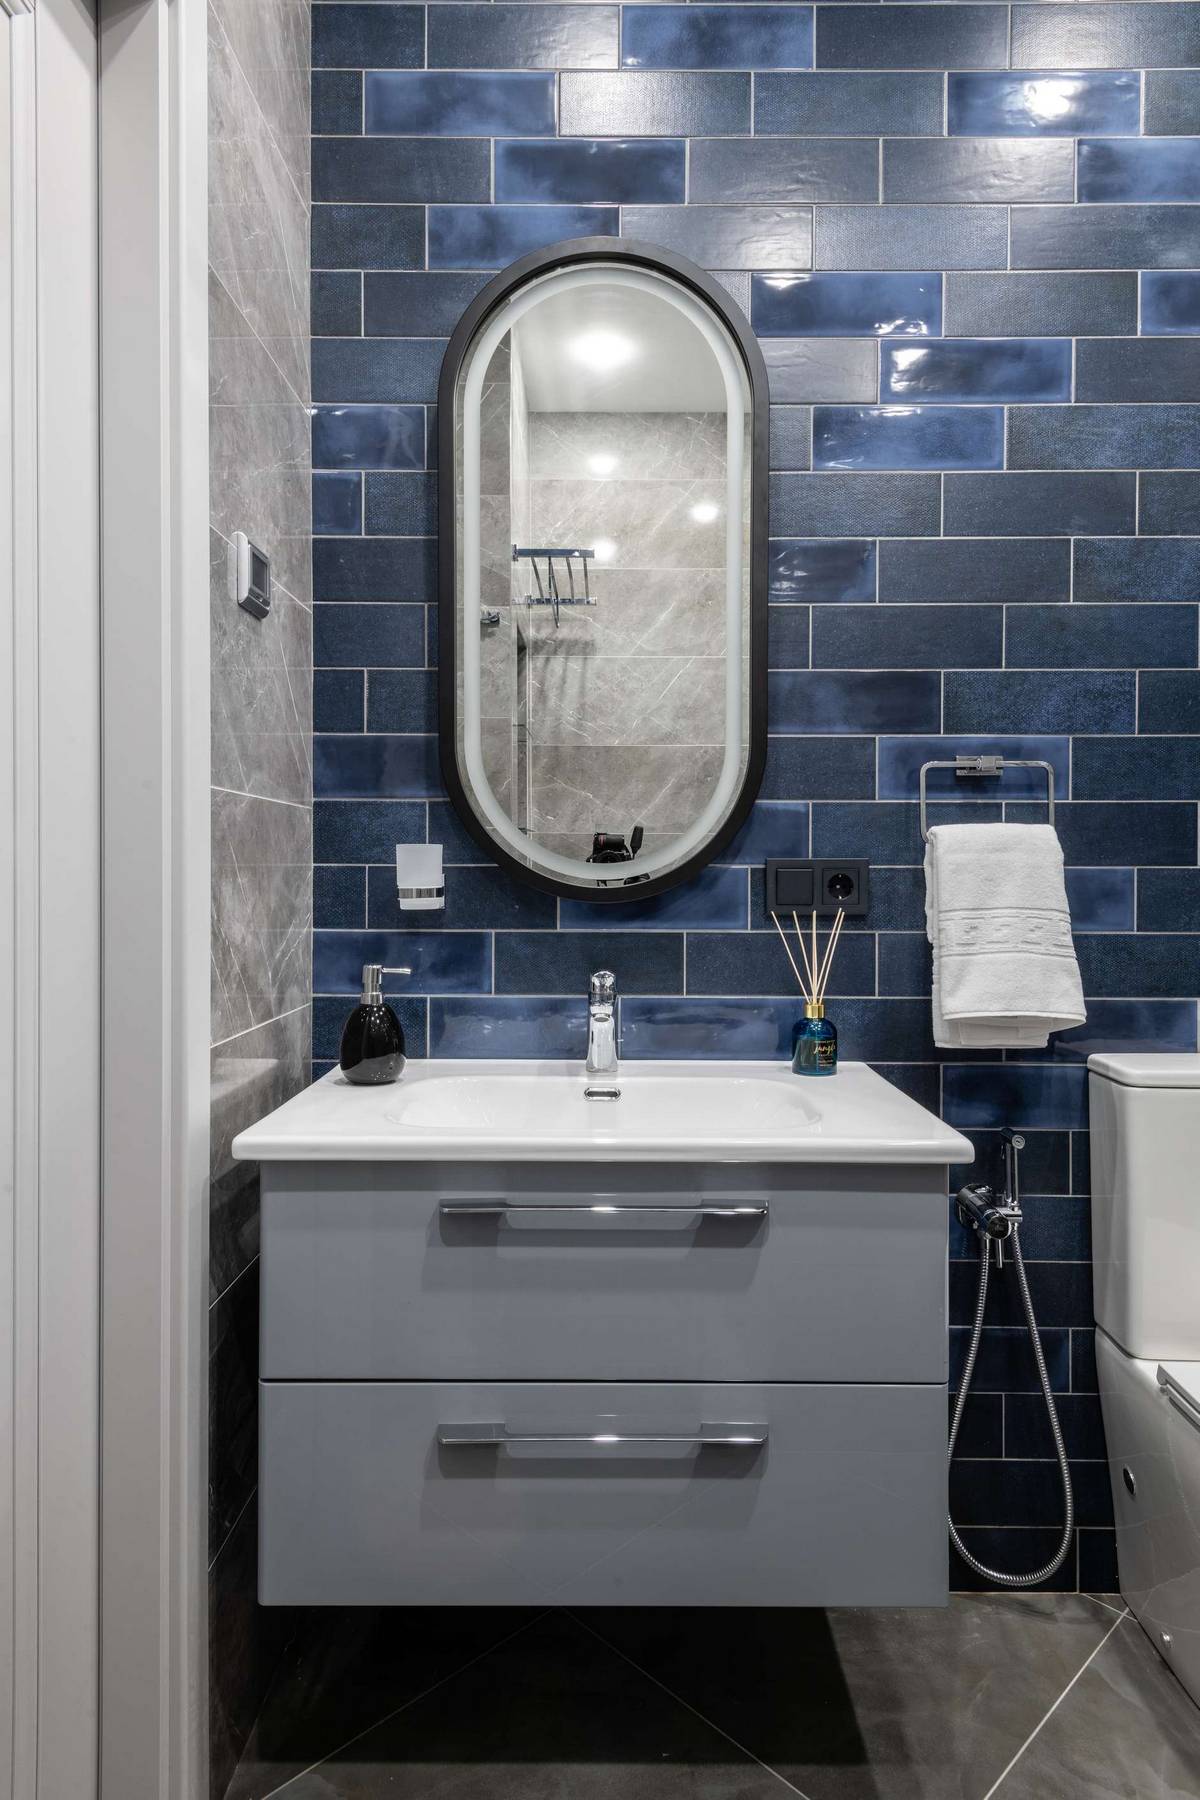 Tủ lưu trữ kết hợp bồn rửa gắn tường giúp giải phóng diện tích mặt sàn, tấm gương hình oval trên bức tường ốp gạch xanh lam đậm, nhạt đẹp mắt.